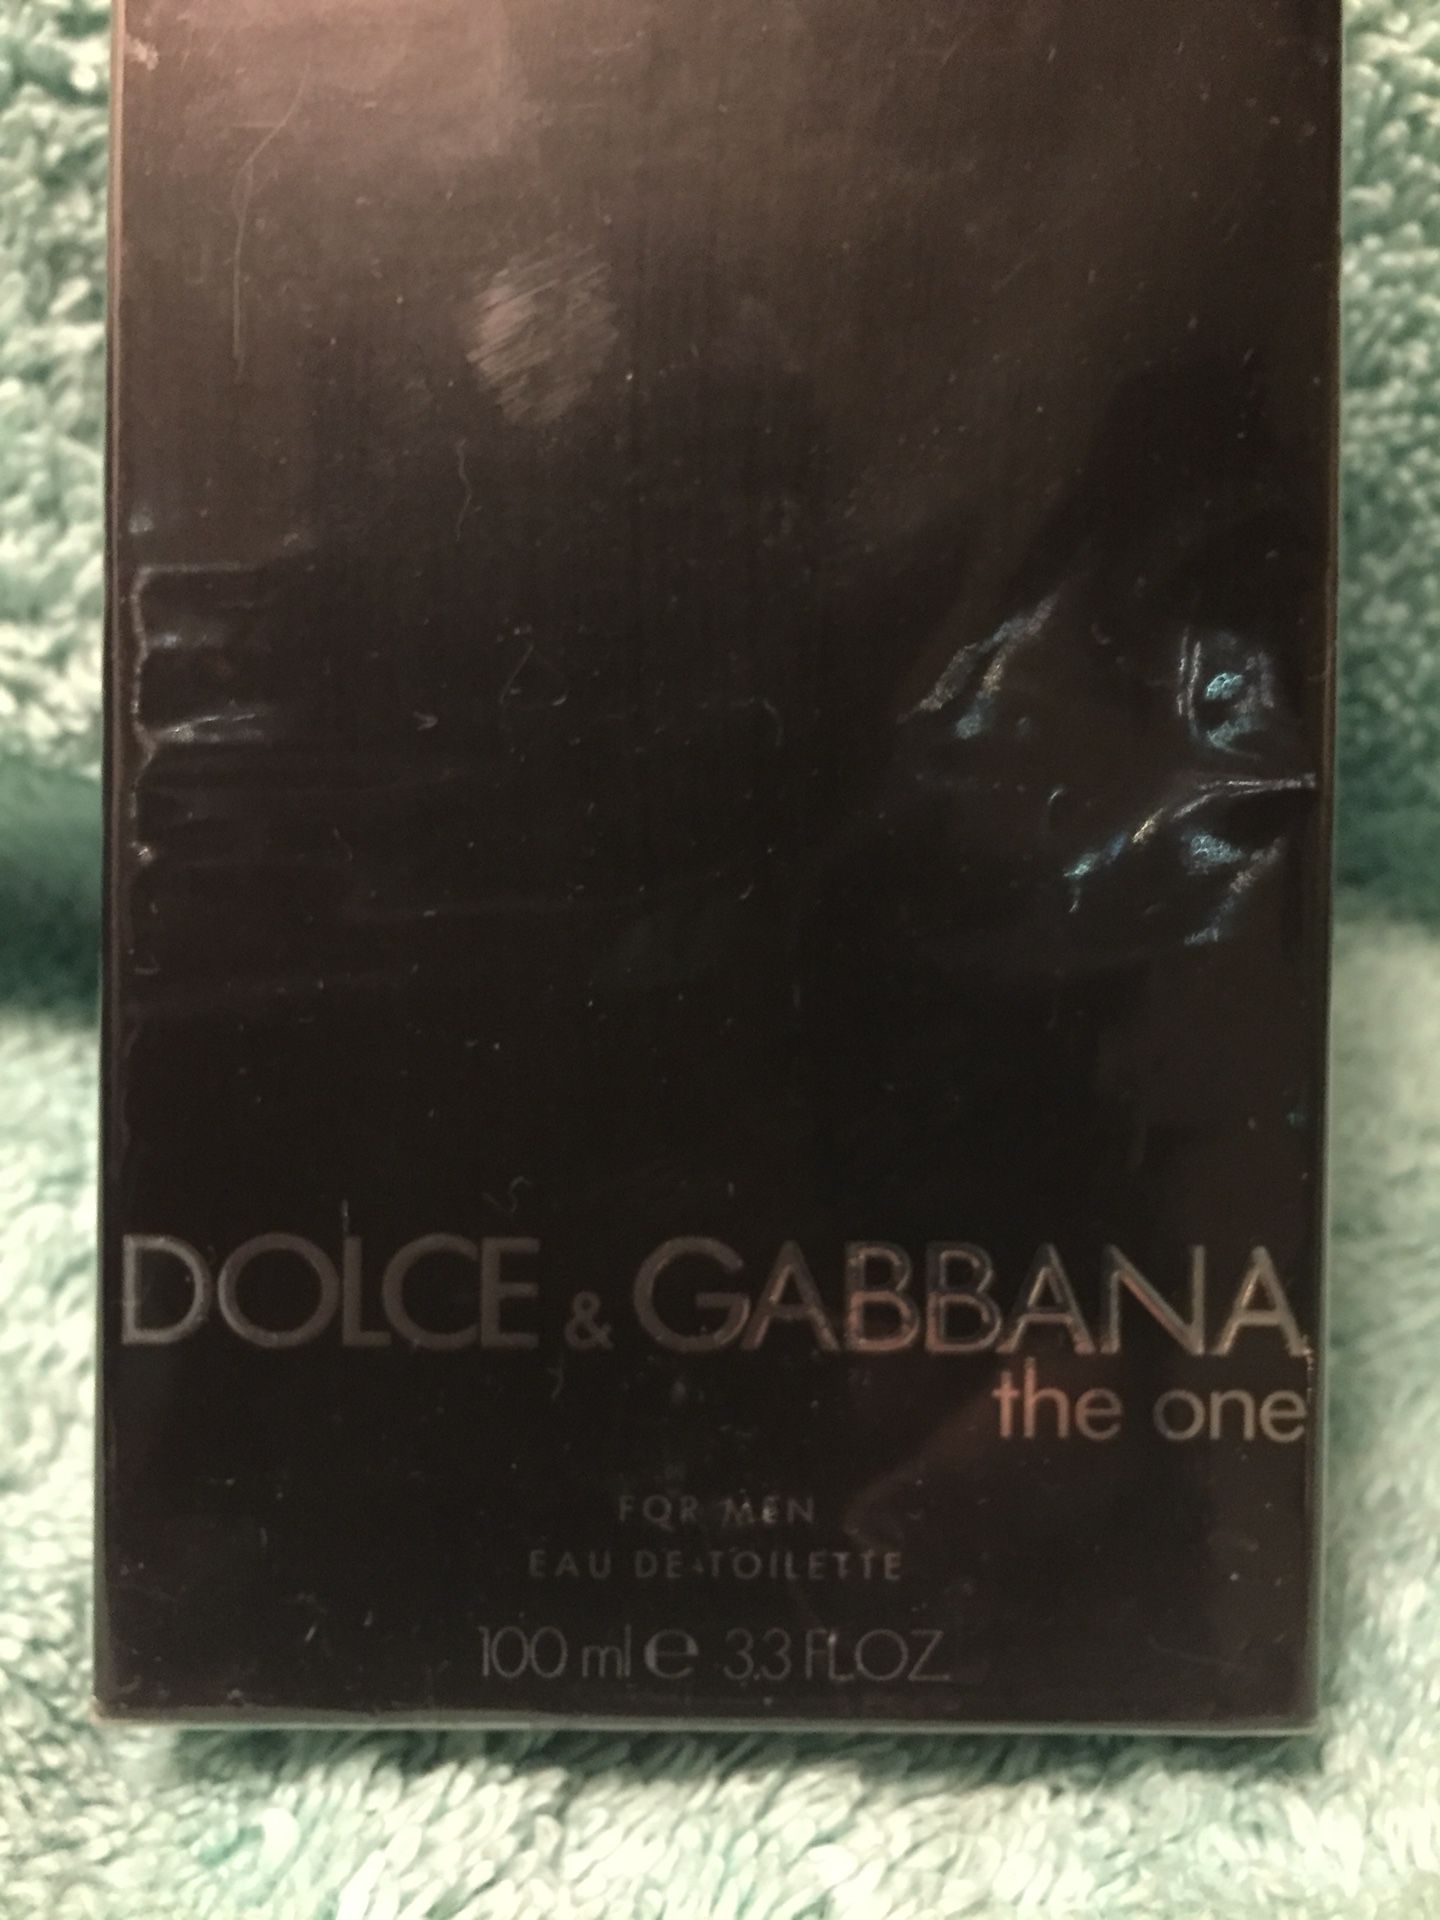 Dolce&Gabbana (the one)